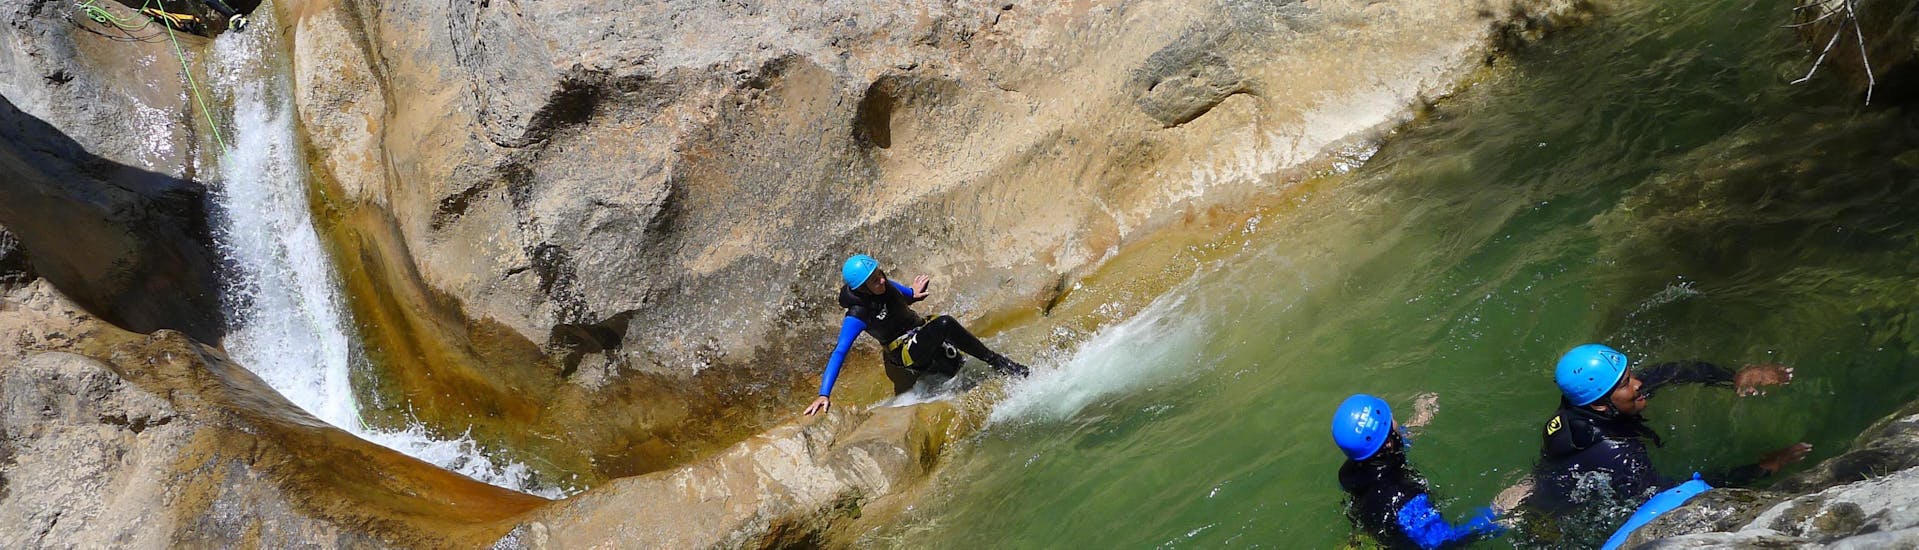 Une fille fait de la descente en rappel pendant le canyoning à Viu de Llevata pour une journée complète avec H2O vives.